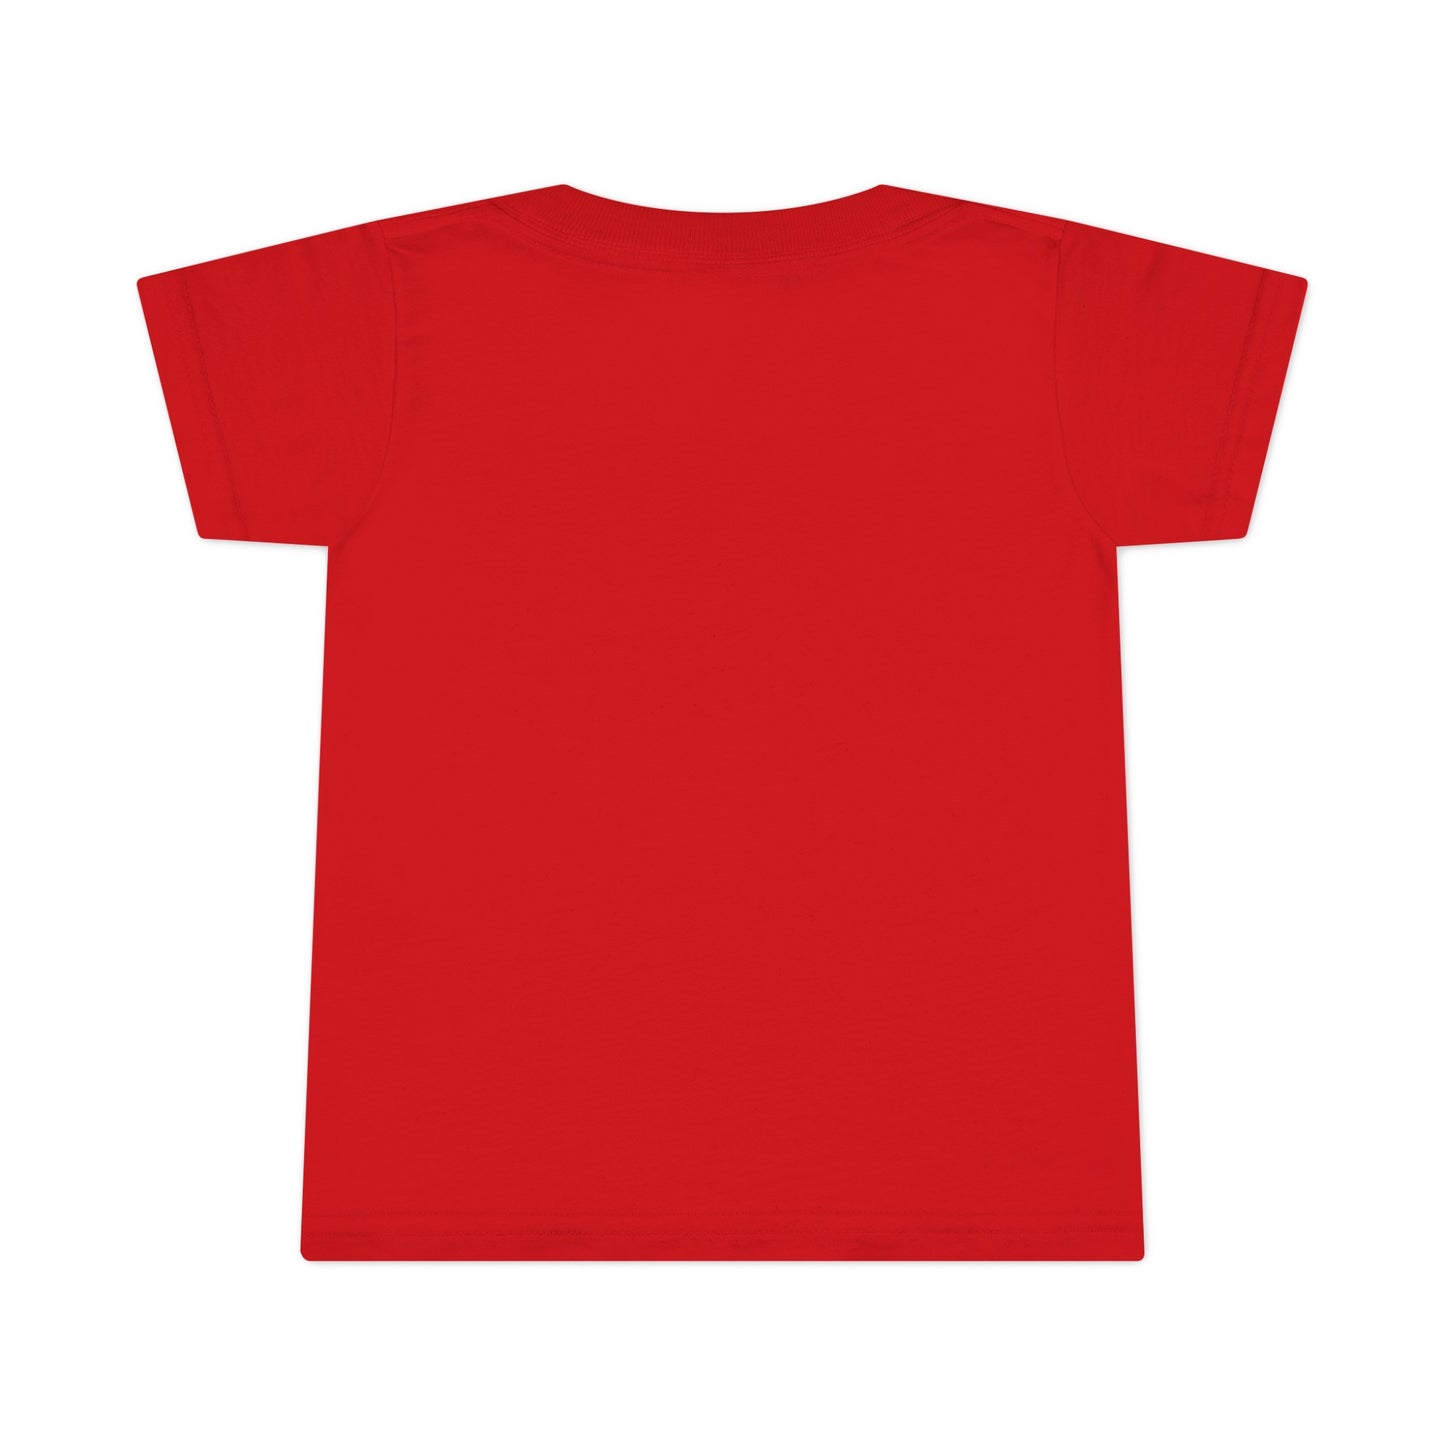 Carter-Allen Toddler T-shirt